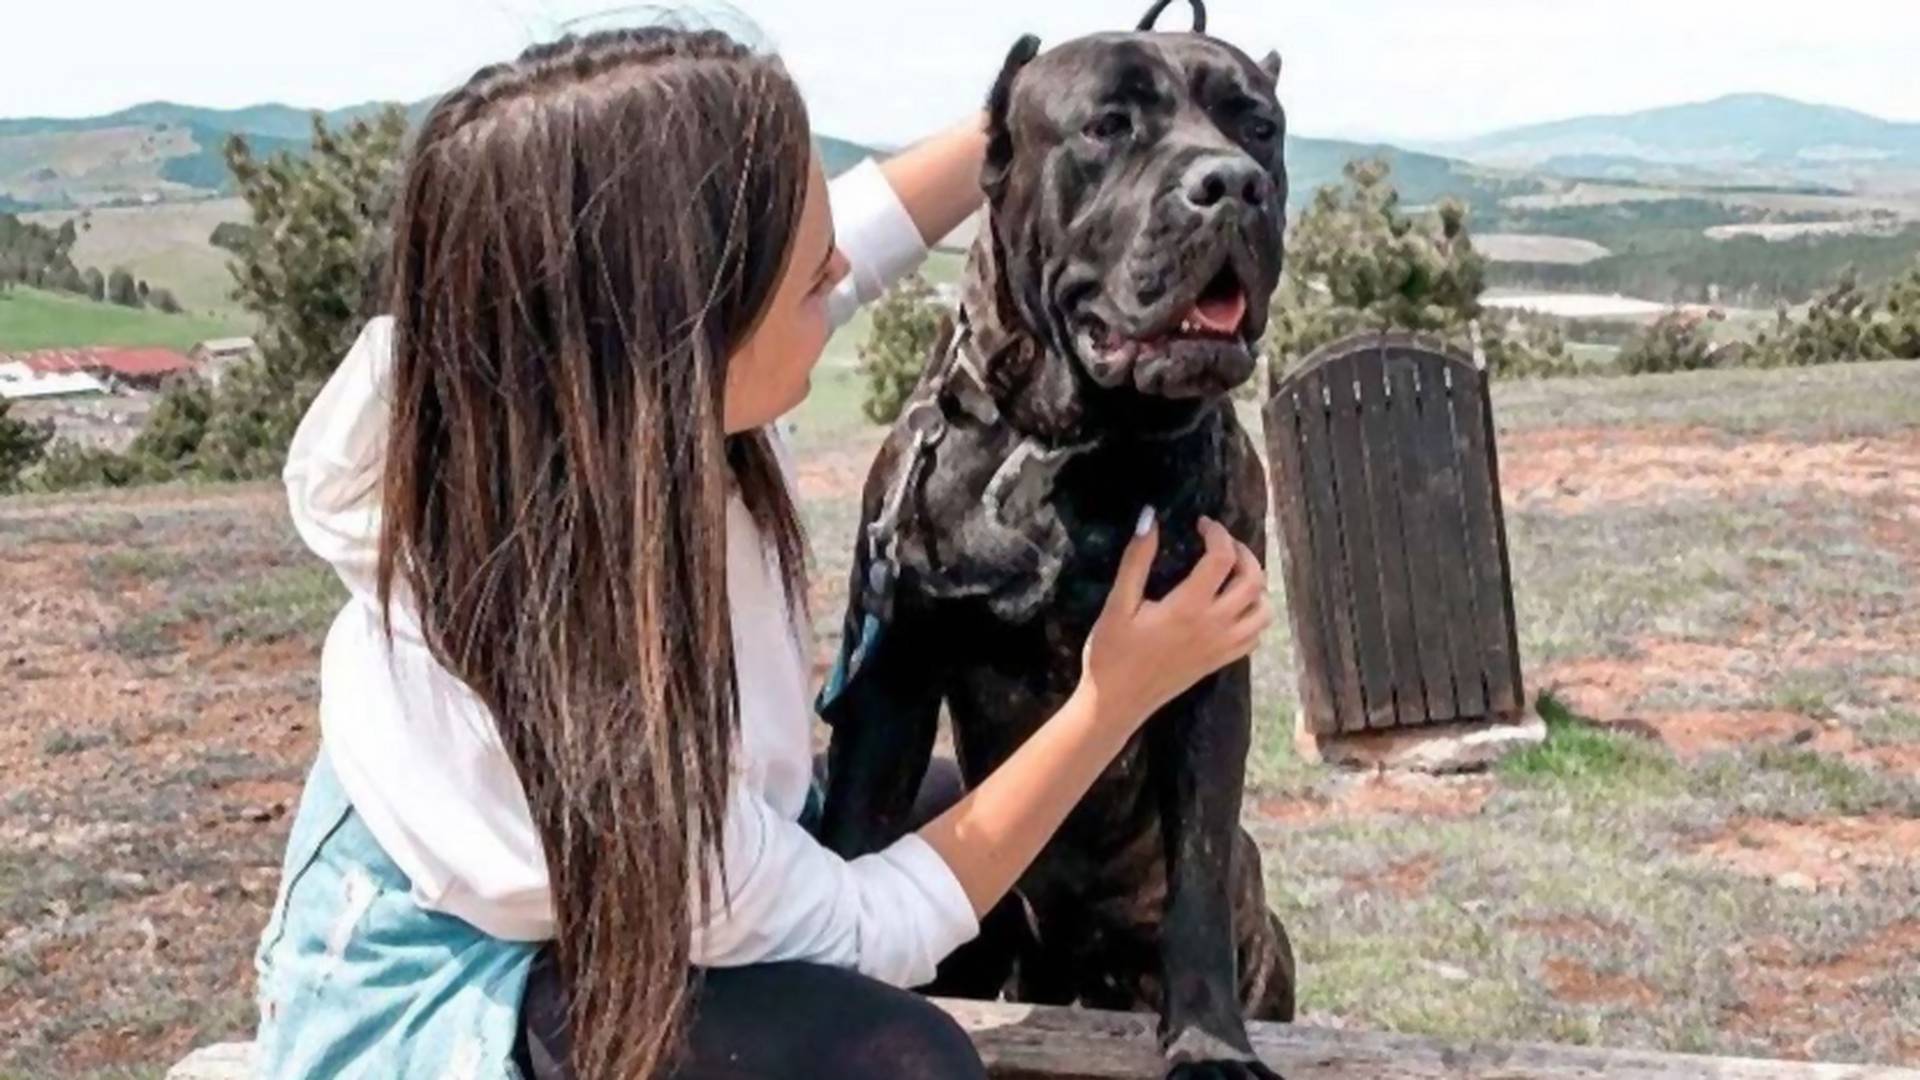 Ko je đubre koje je to moglo da uradi - cela Srbija se udružila da pomogne Ljubici da pronađe ukradenog psa